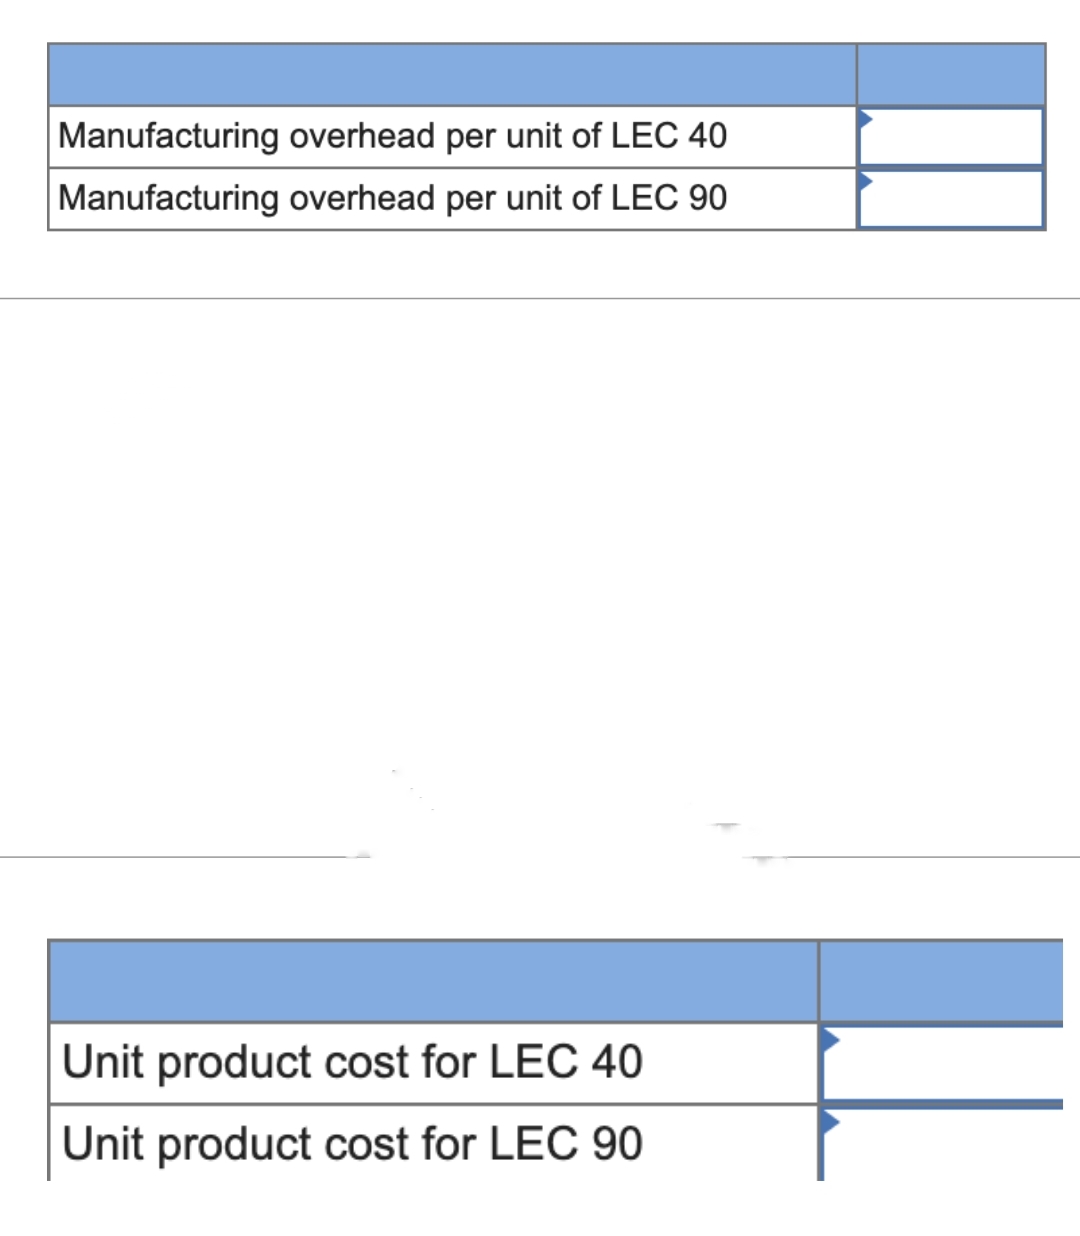 Manufacturing overhead per unit of LEC 40
Manufacturing overhead per unit of LEC 90
Unit product cost for LEC 40
Unit product cost for LEC 90